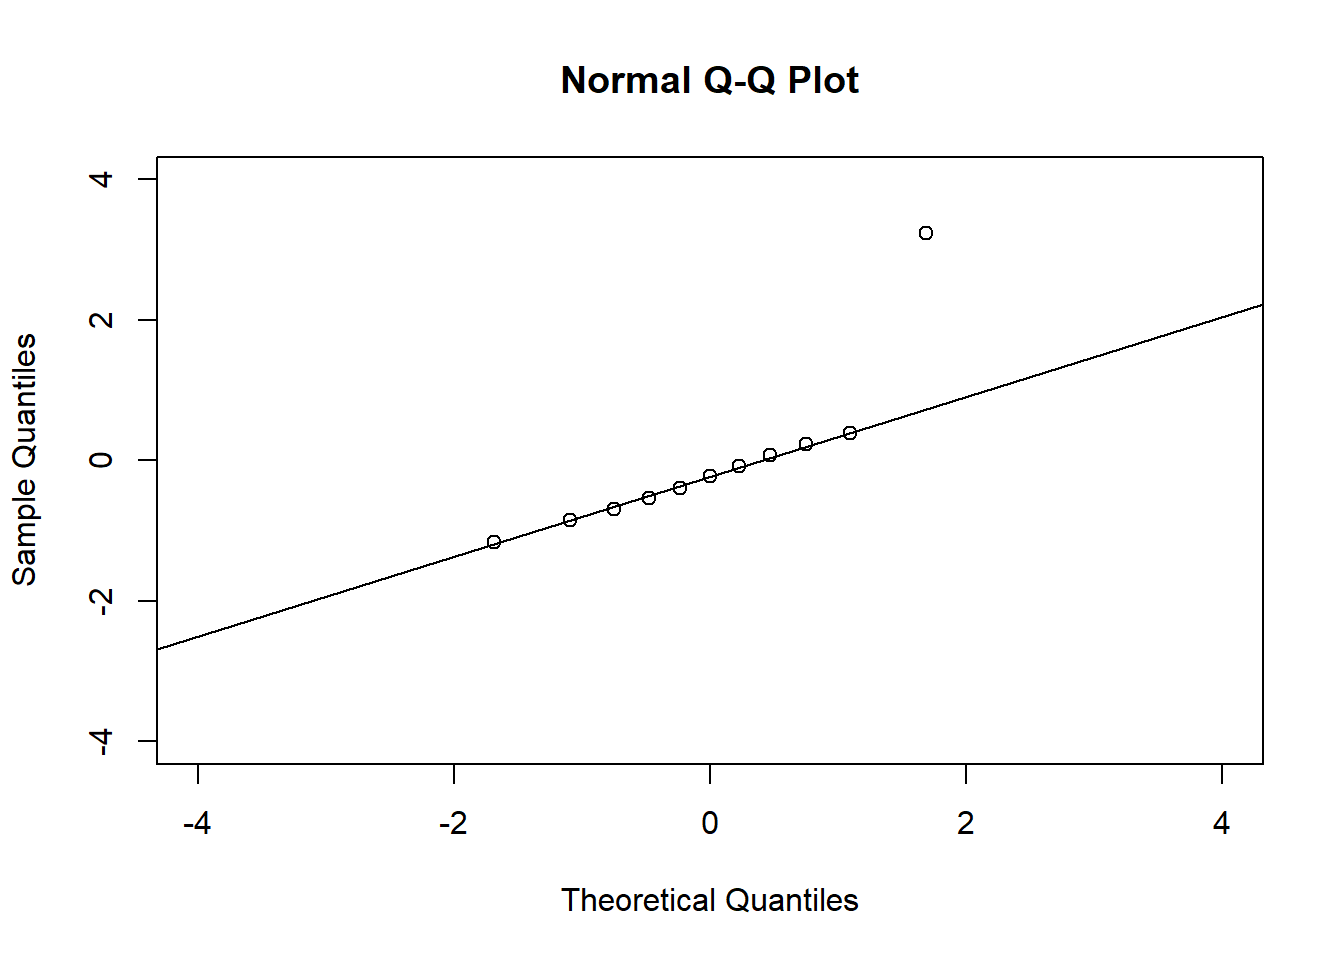 @anscombe1973 datasets. Quantile-quantile plot (QQ plot) of residuals.